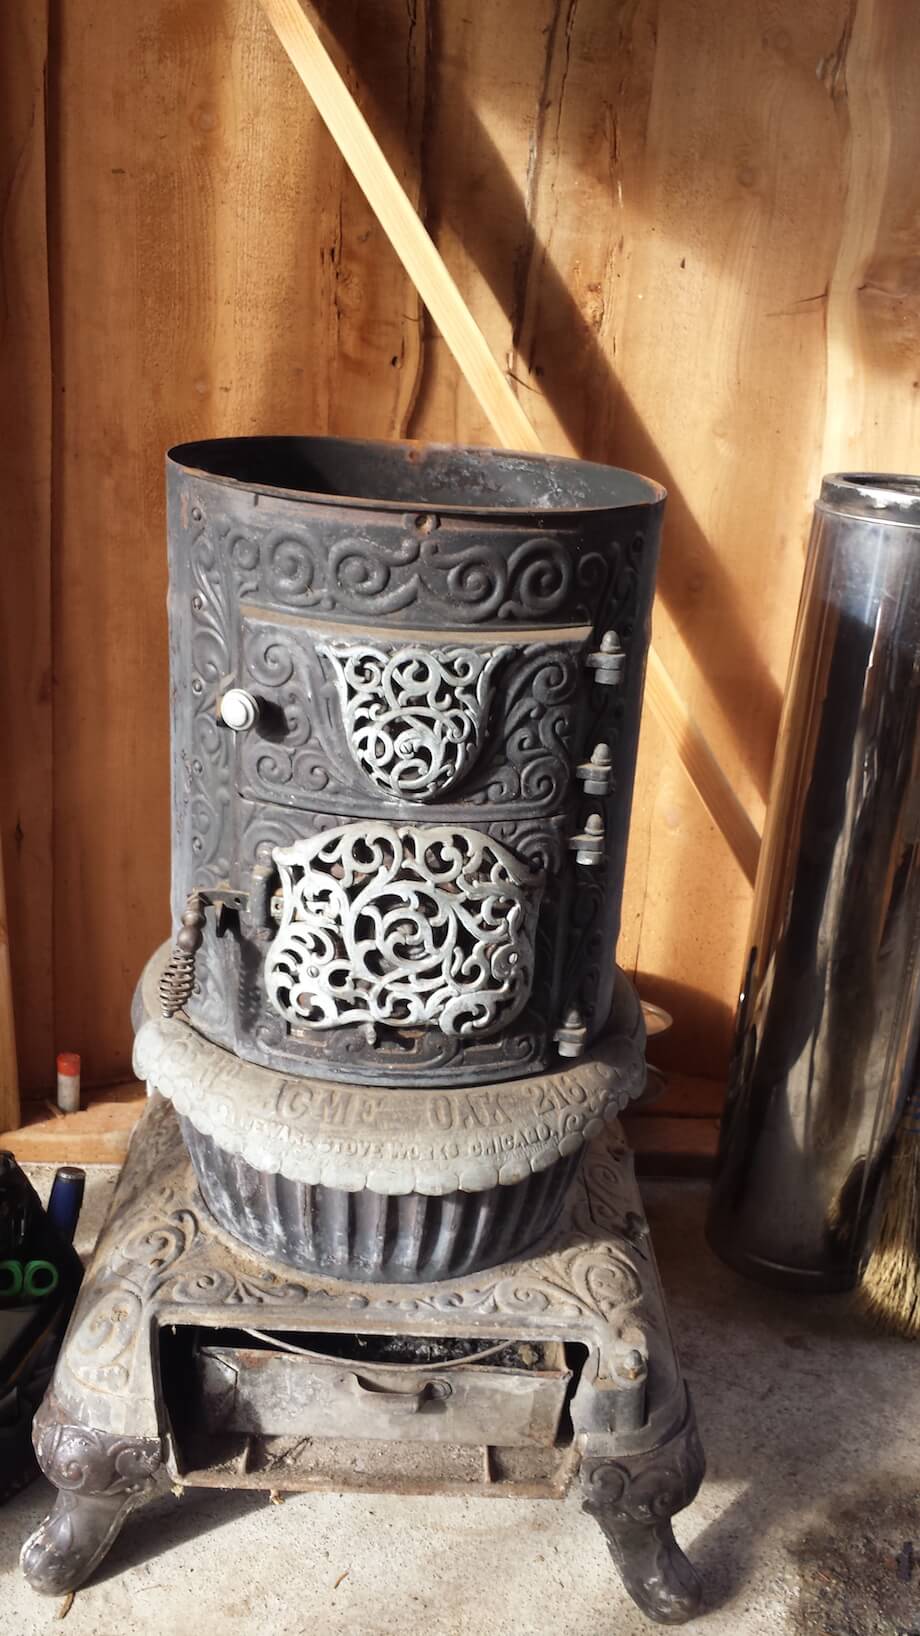 cast-iron stove as DIY sauna heating element